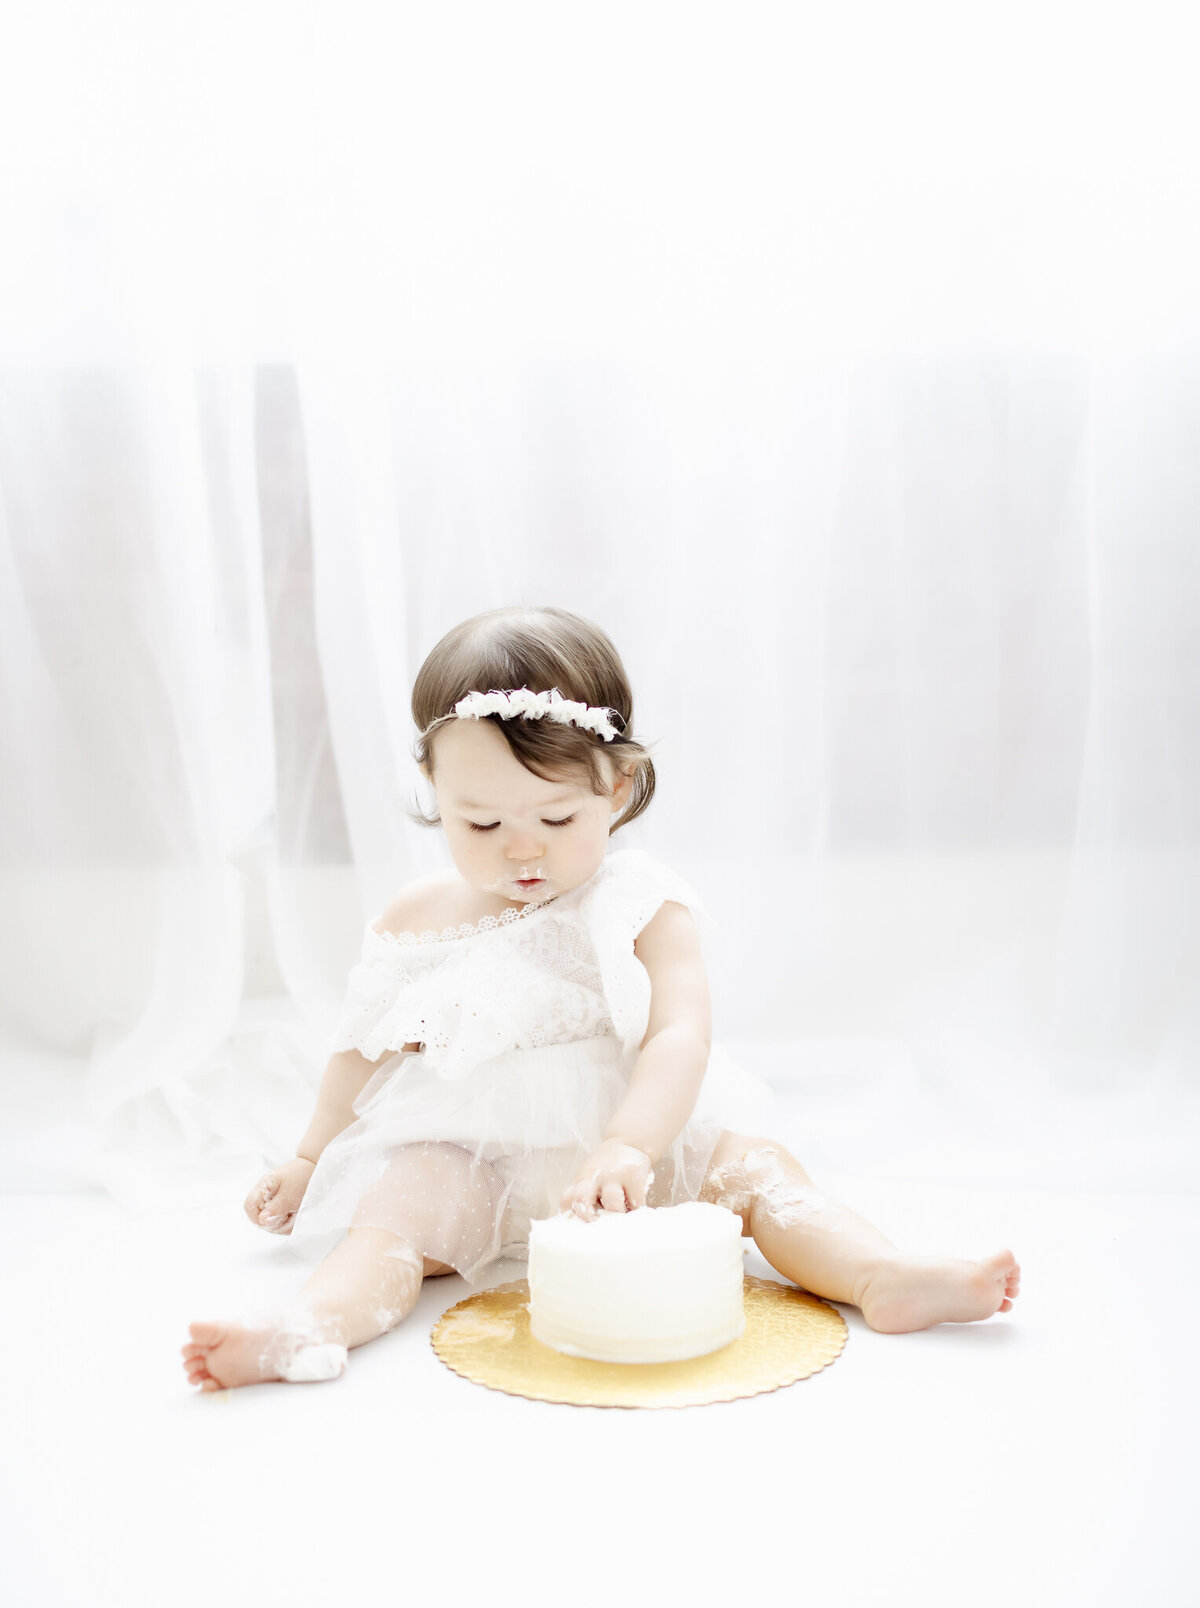 Abilene Baby Photographer | Parry-53